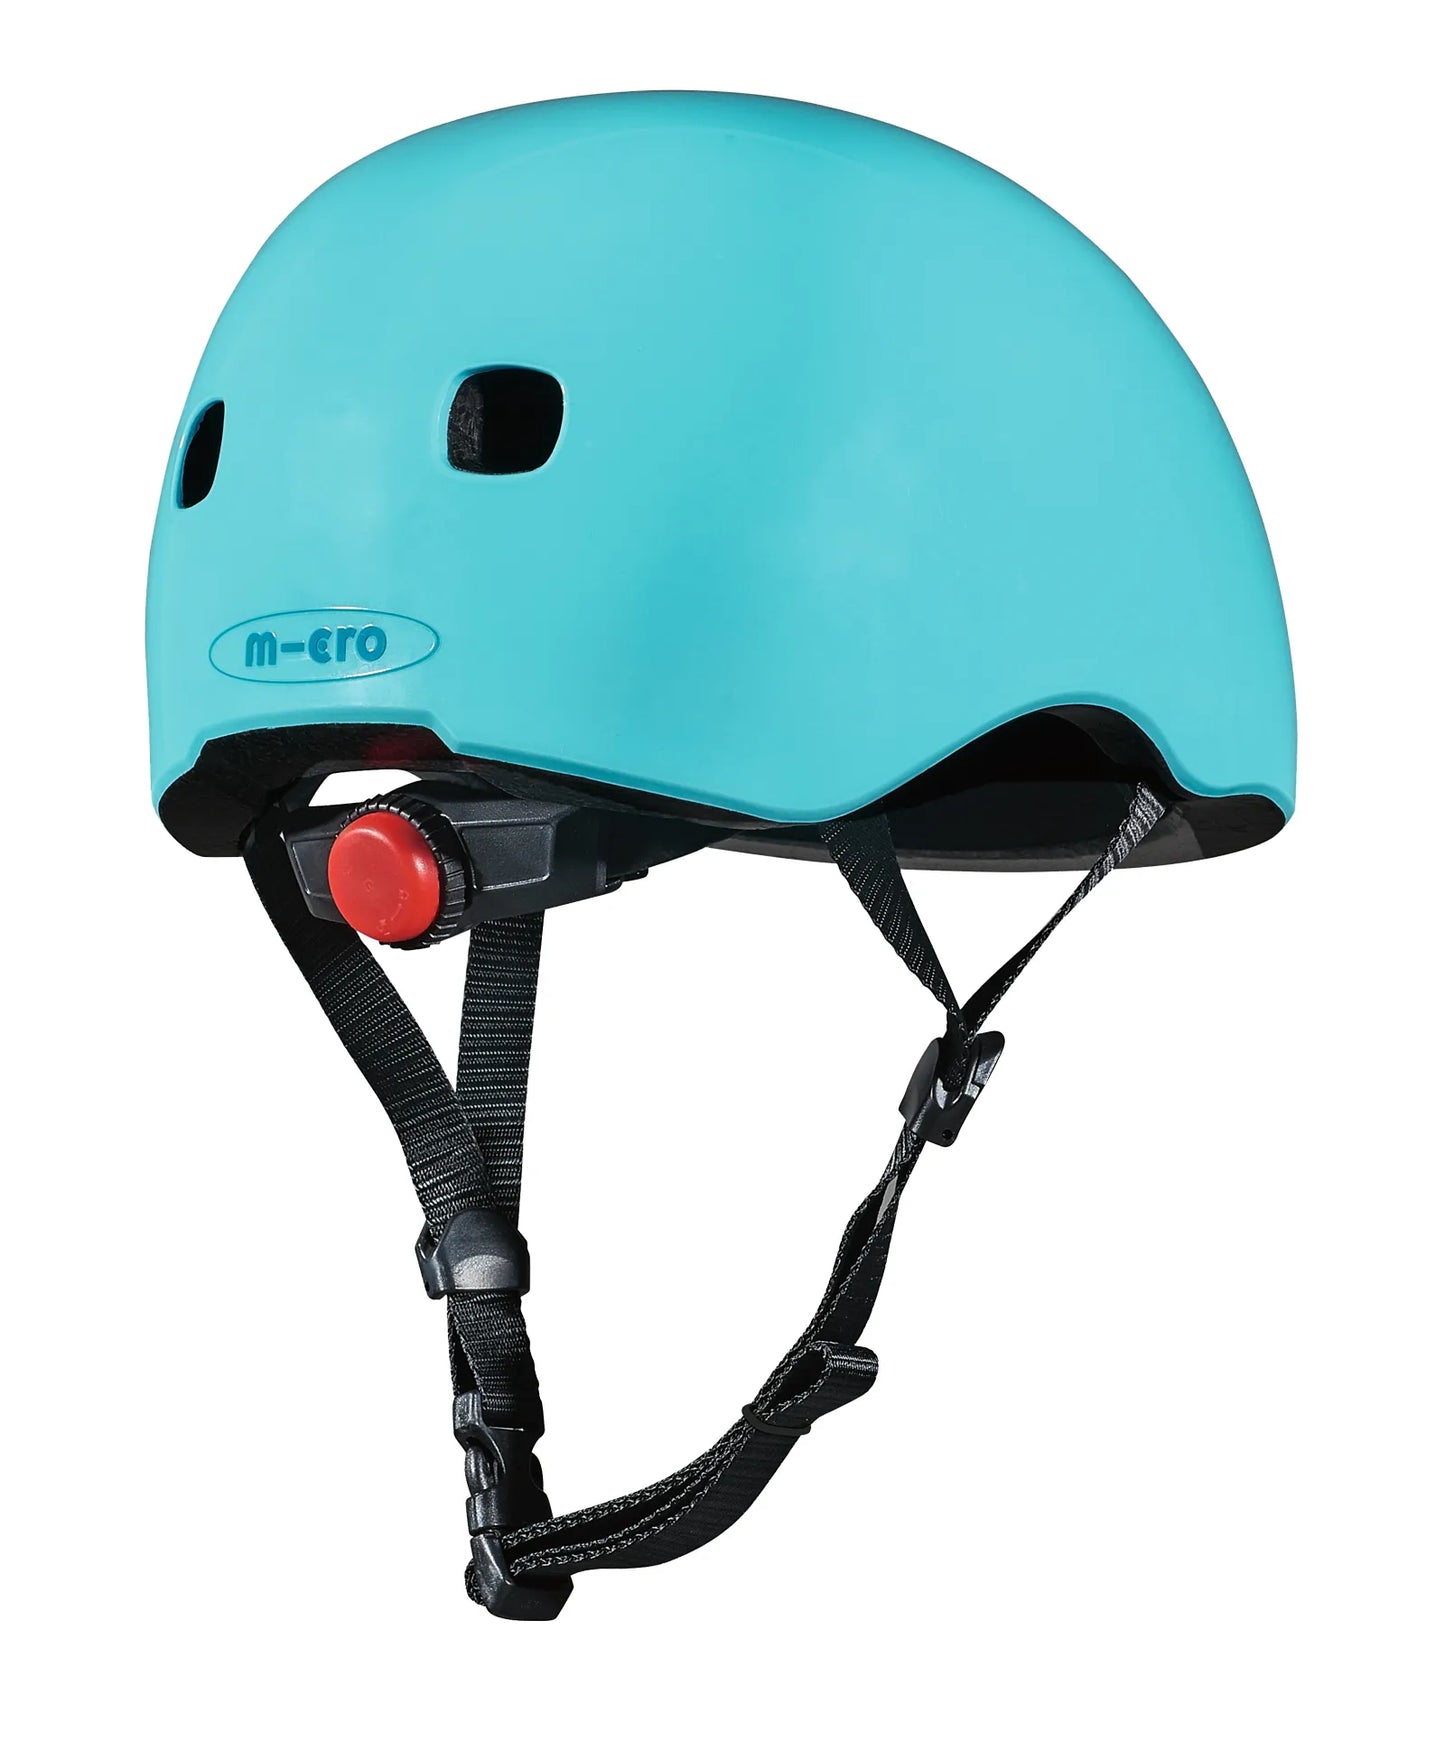 Micro PC Helmet - Mint - Laadlee